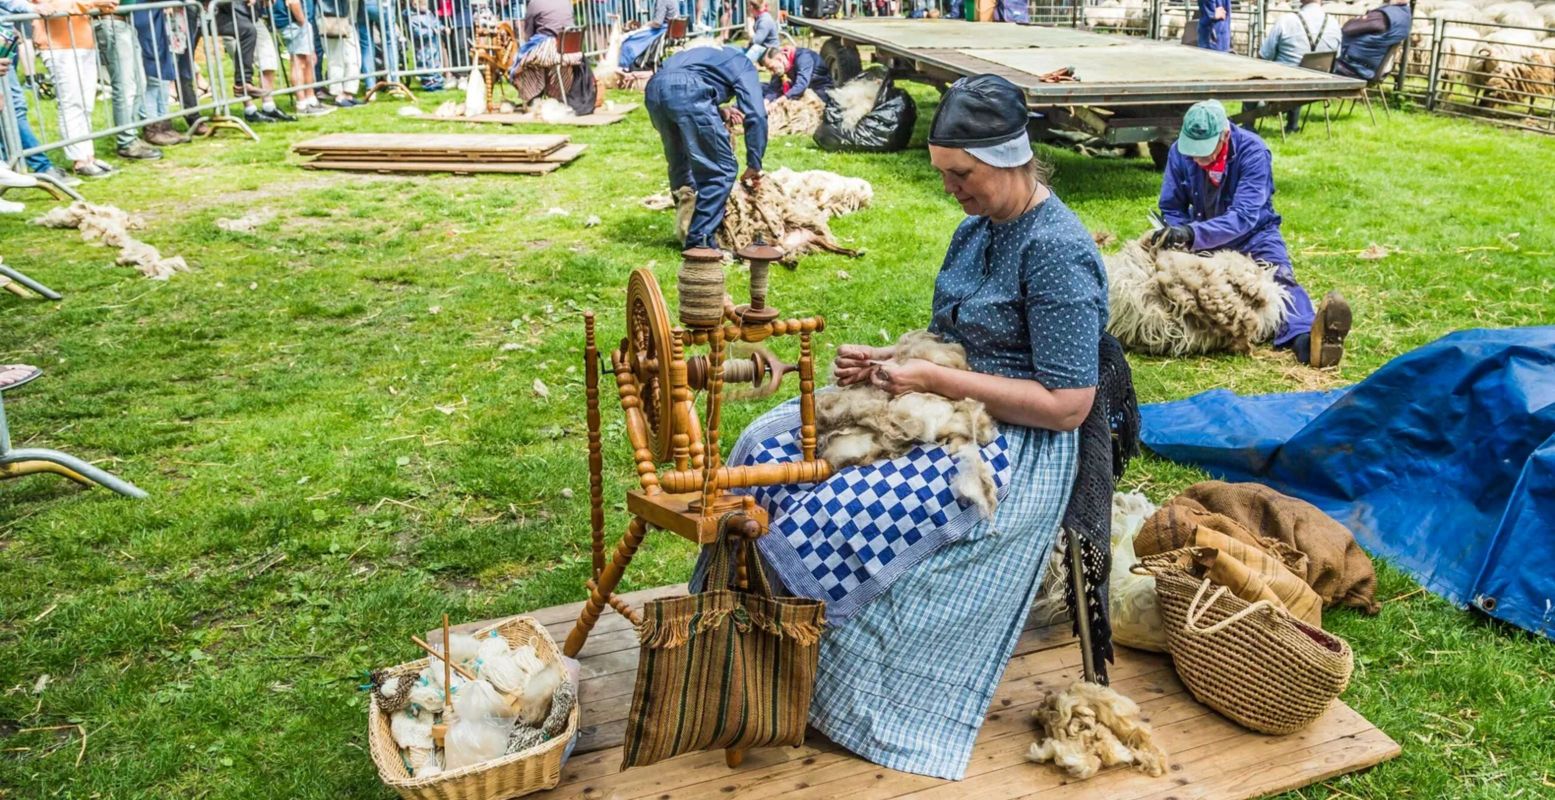 Op het schaapscheerdersfeest in Exloo vind je ook wolspinsters in leuke, ouderwetse klederdracht. Foto: © Bram van Wijk